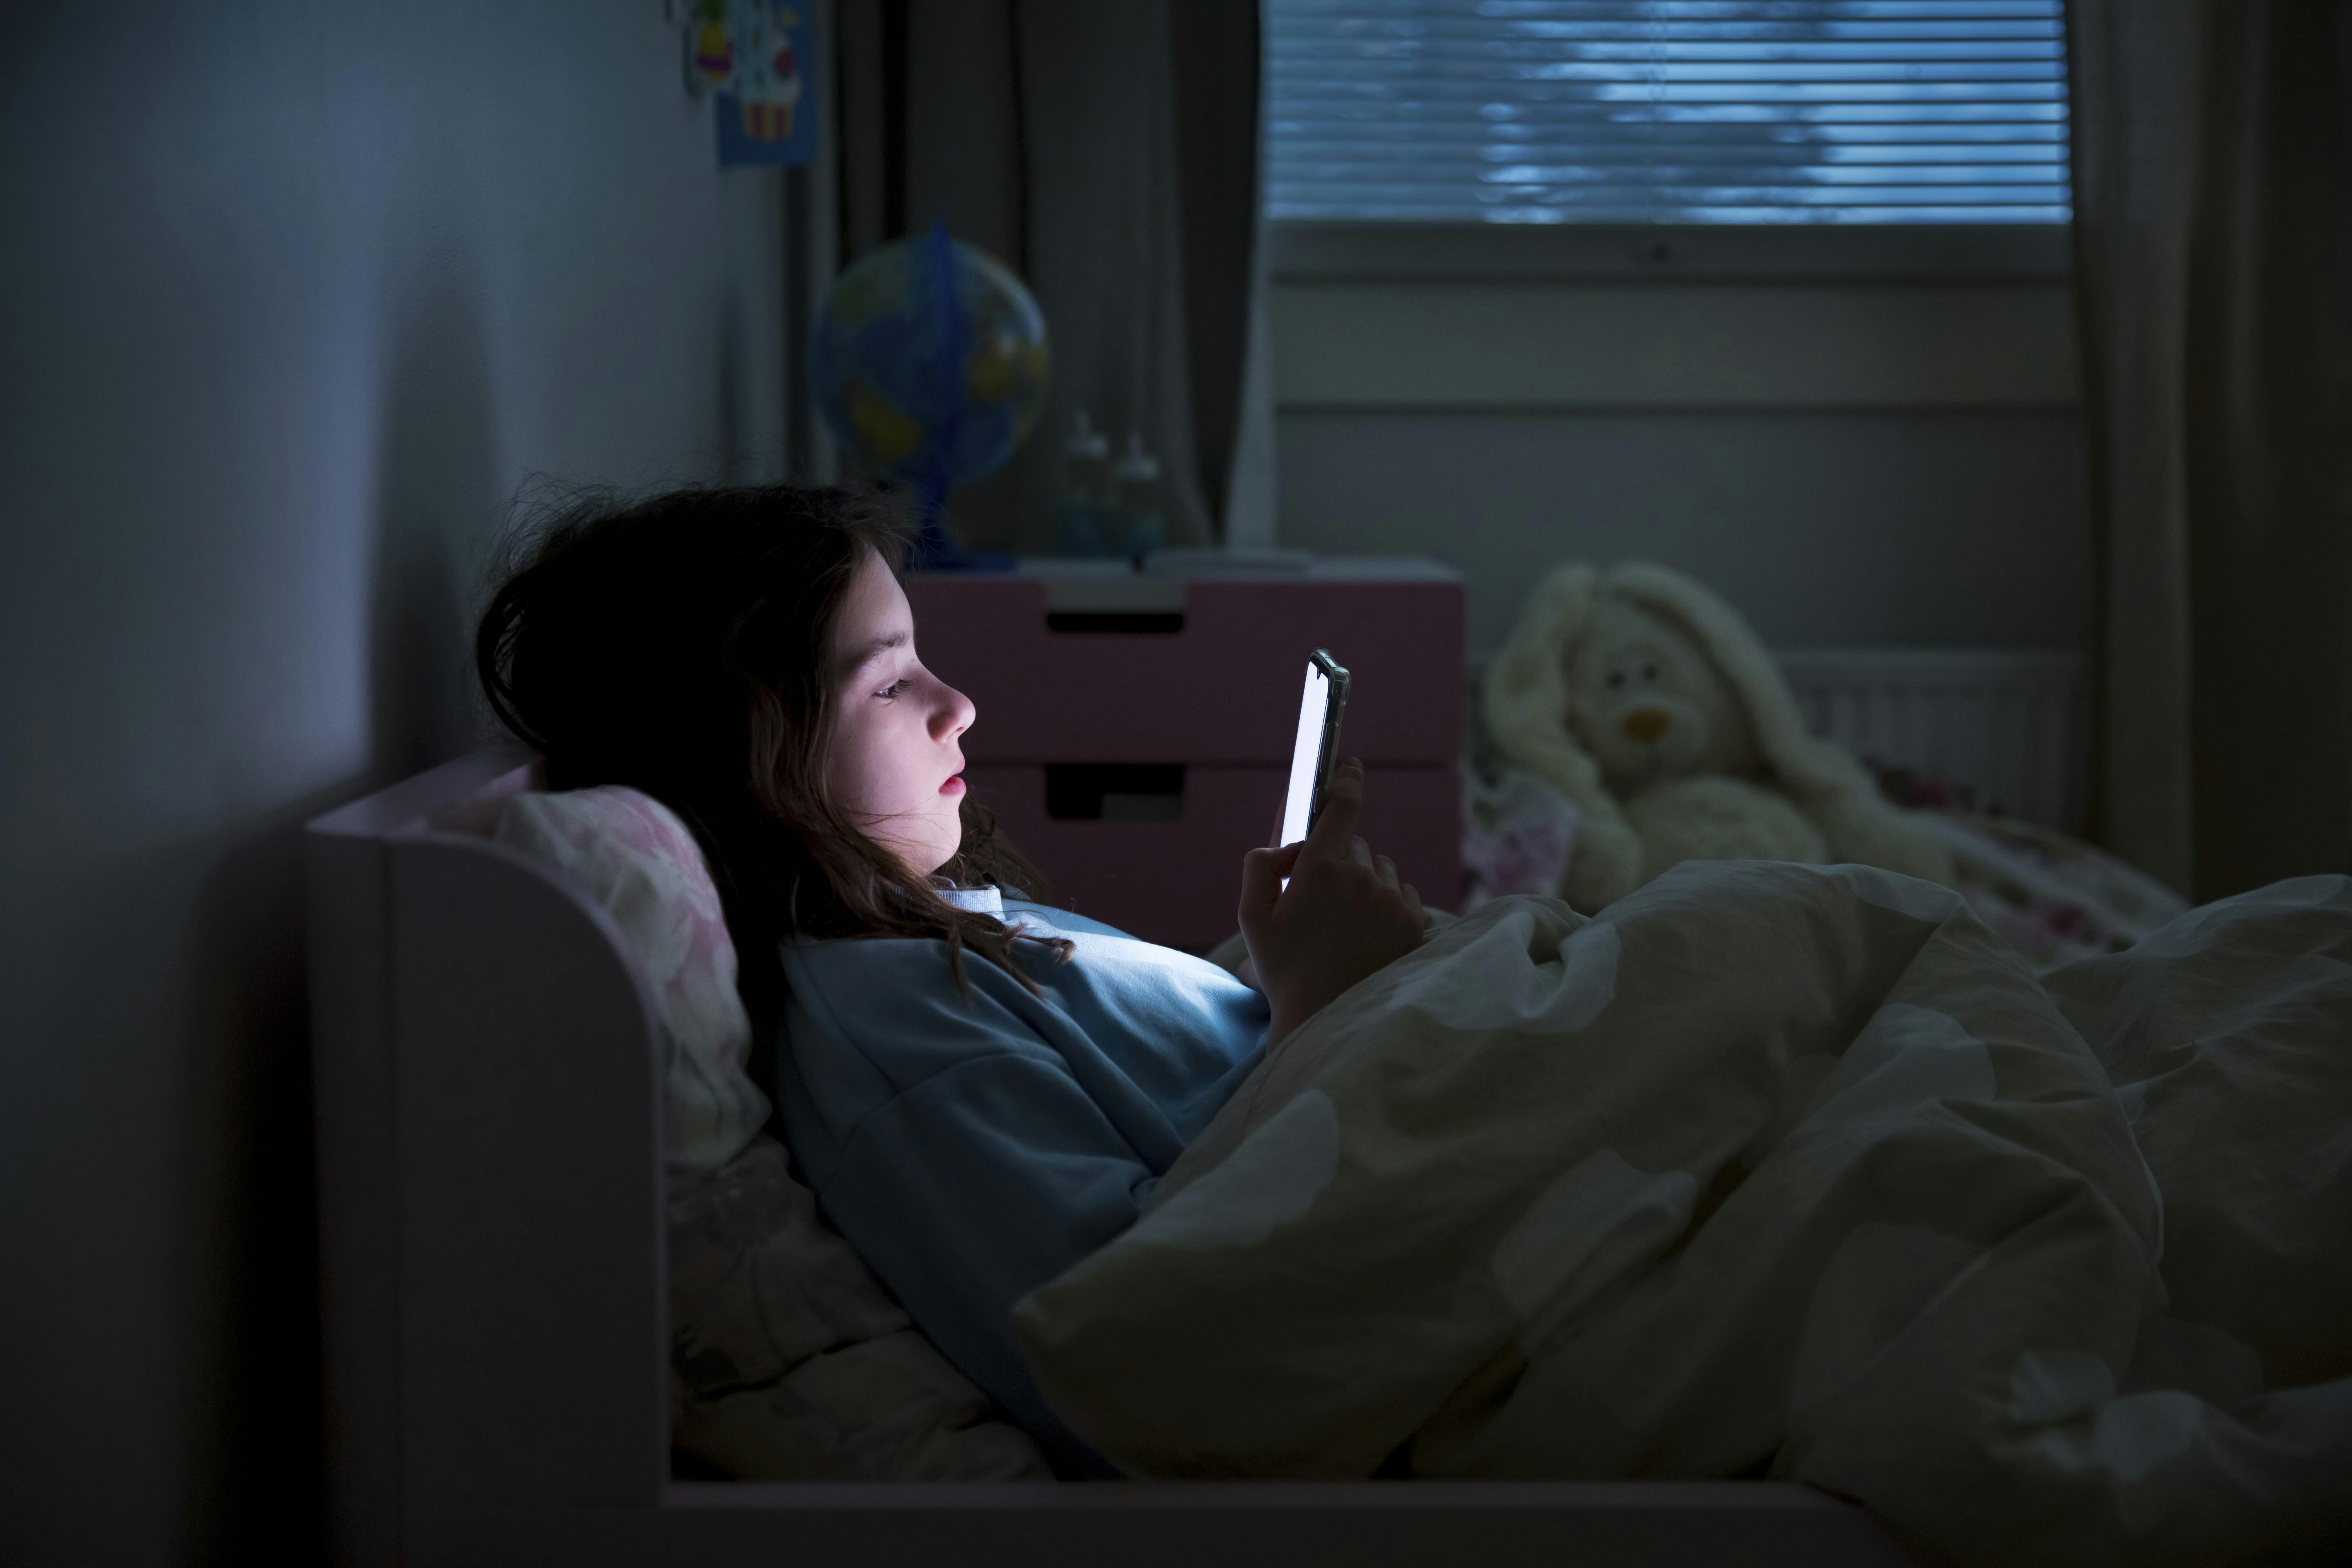 børns skærmforbrug, pige ligger i sengen med mobil